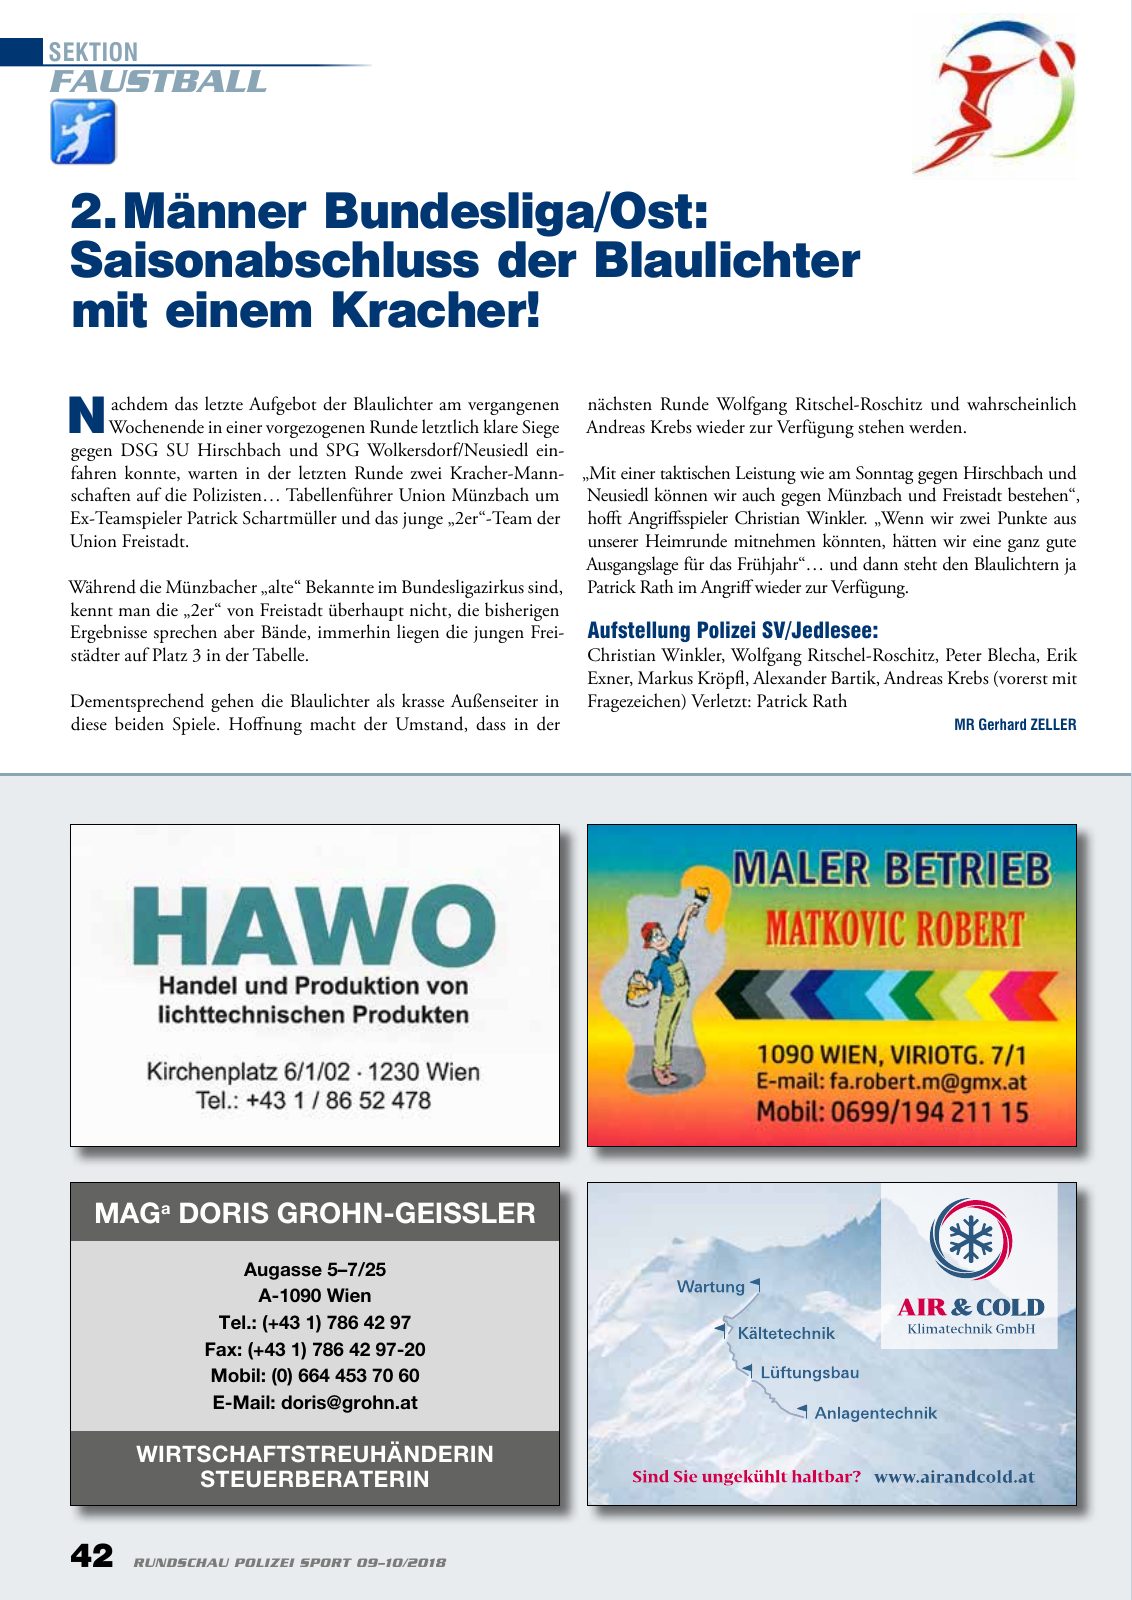 Vorschau Rundschau Polizei Sport 09-10/2018 Seite 42